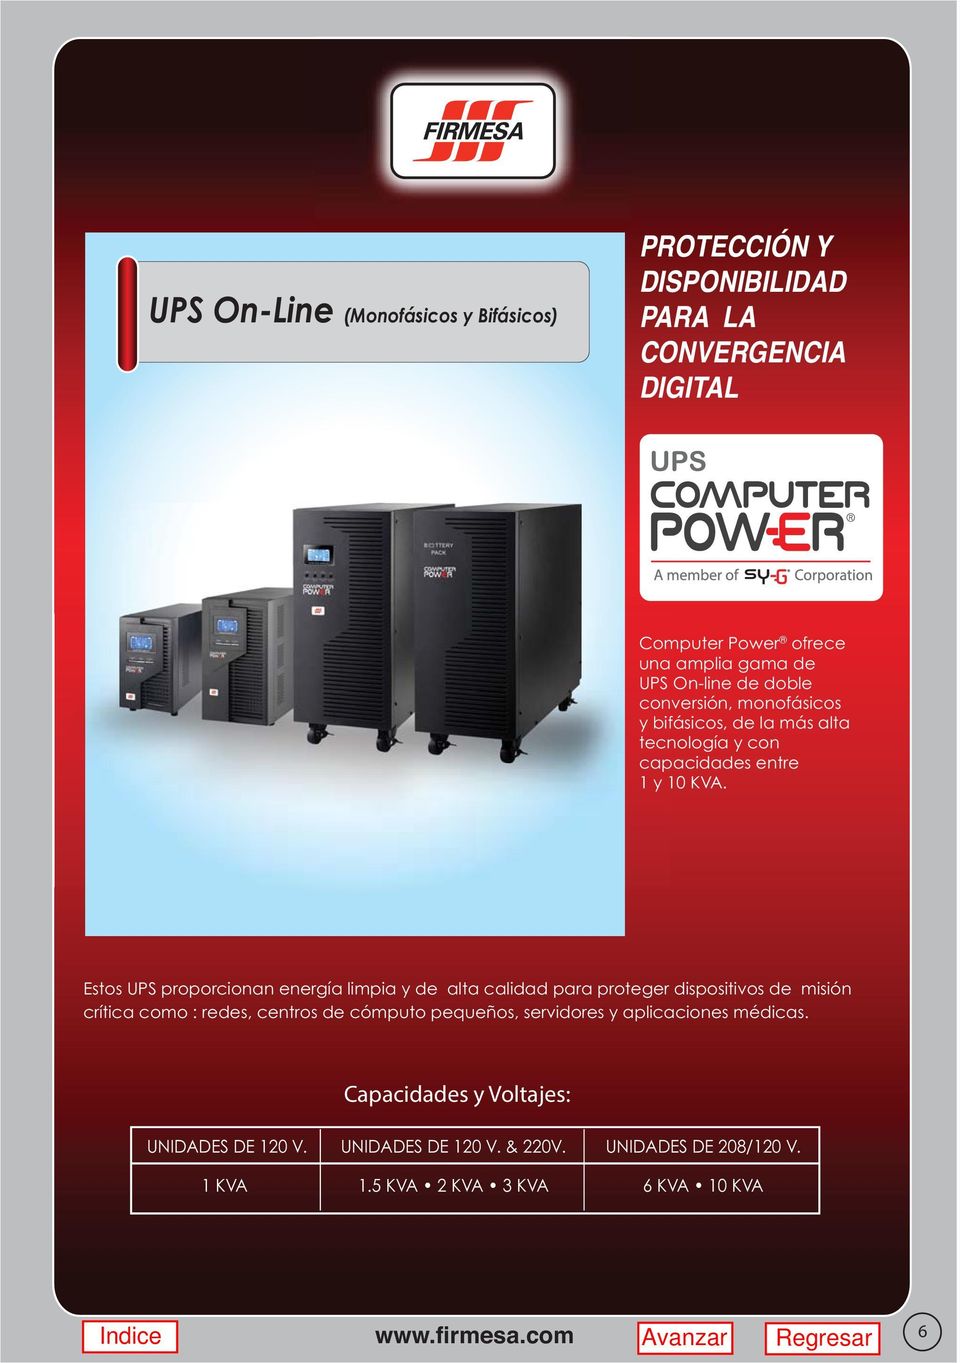 Estos UPS proporcionan energía limpia y de alta calidad para proteger dispositivos de misión crítica como : redes, centros de cómputo